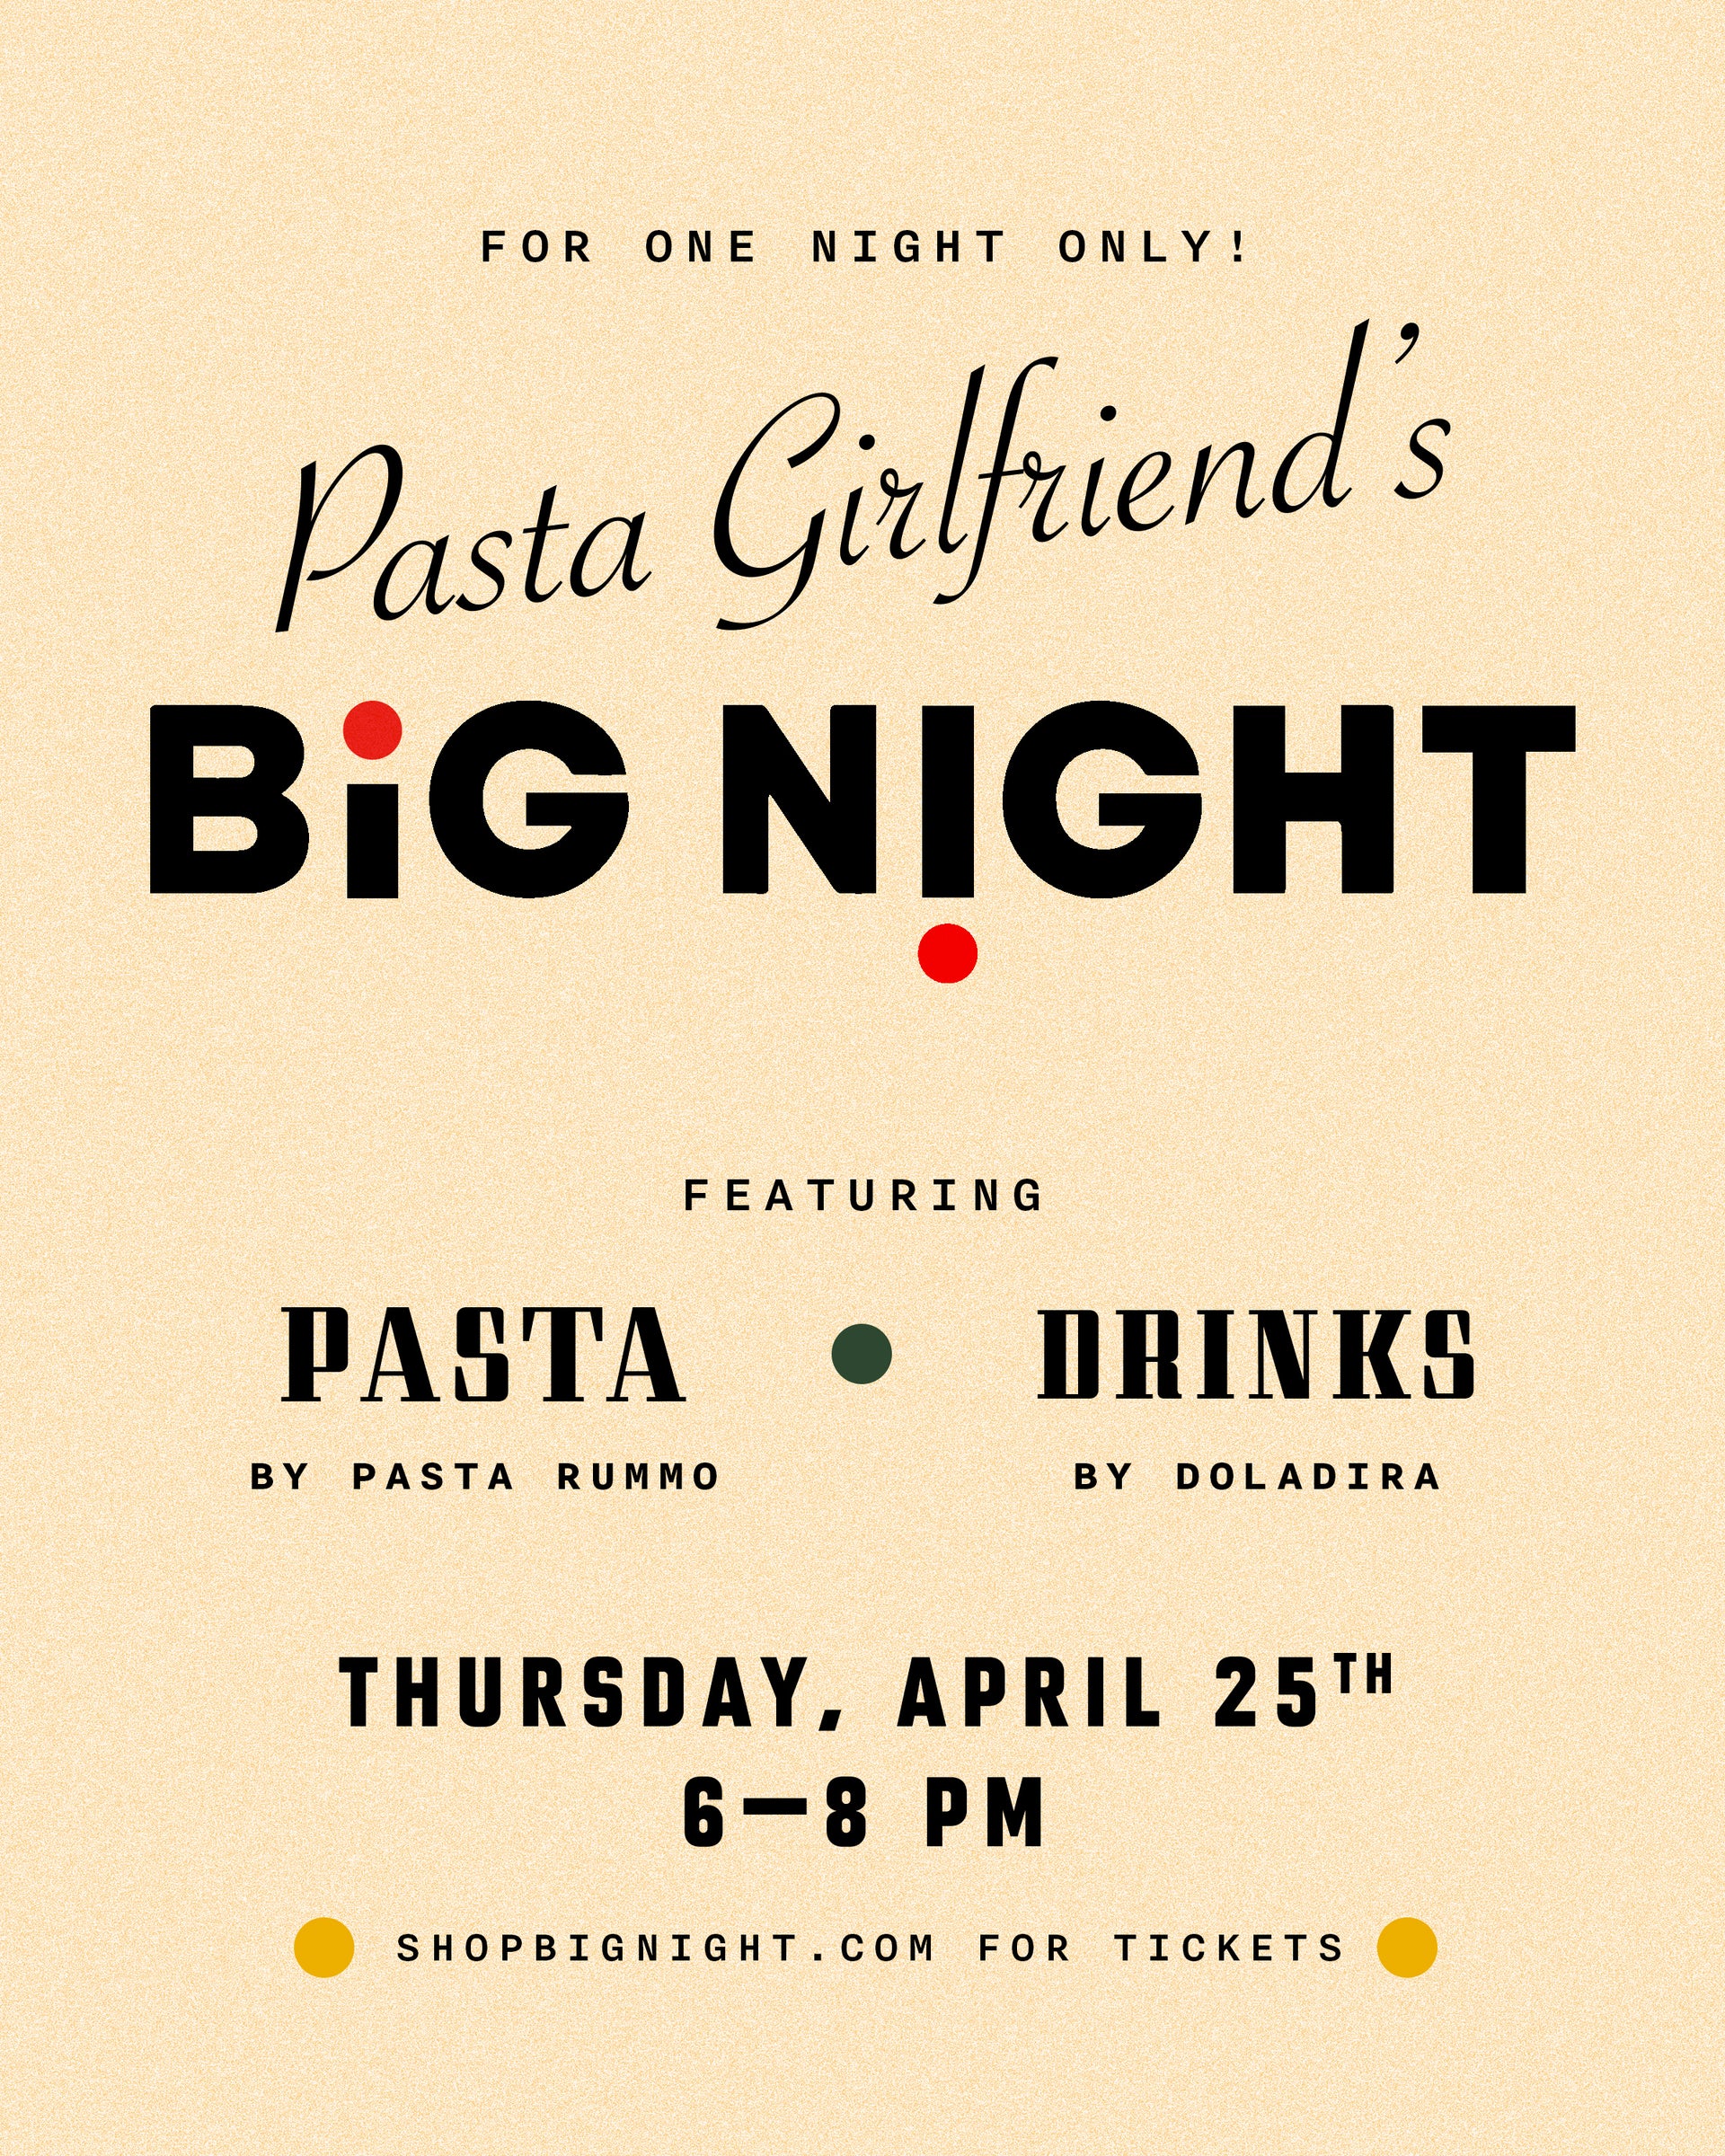 Pasta Girlfriend's Big Night